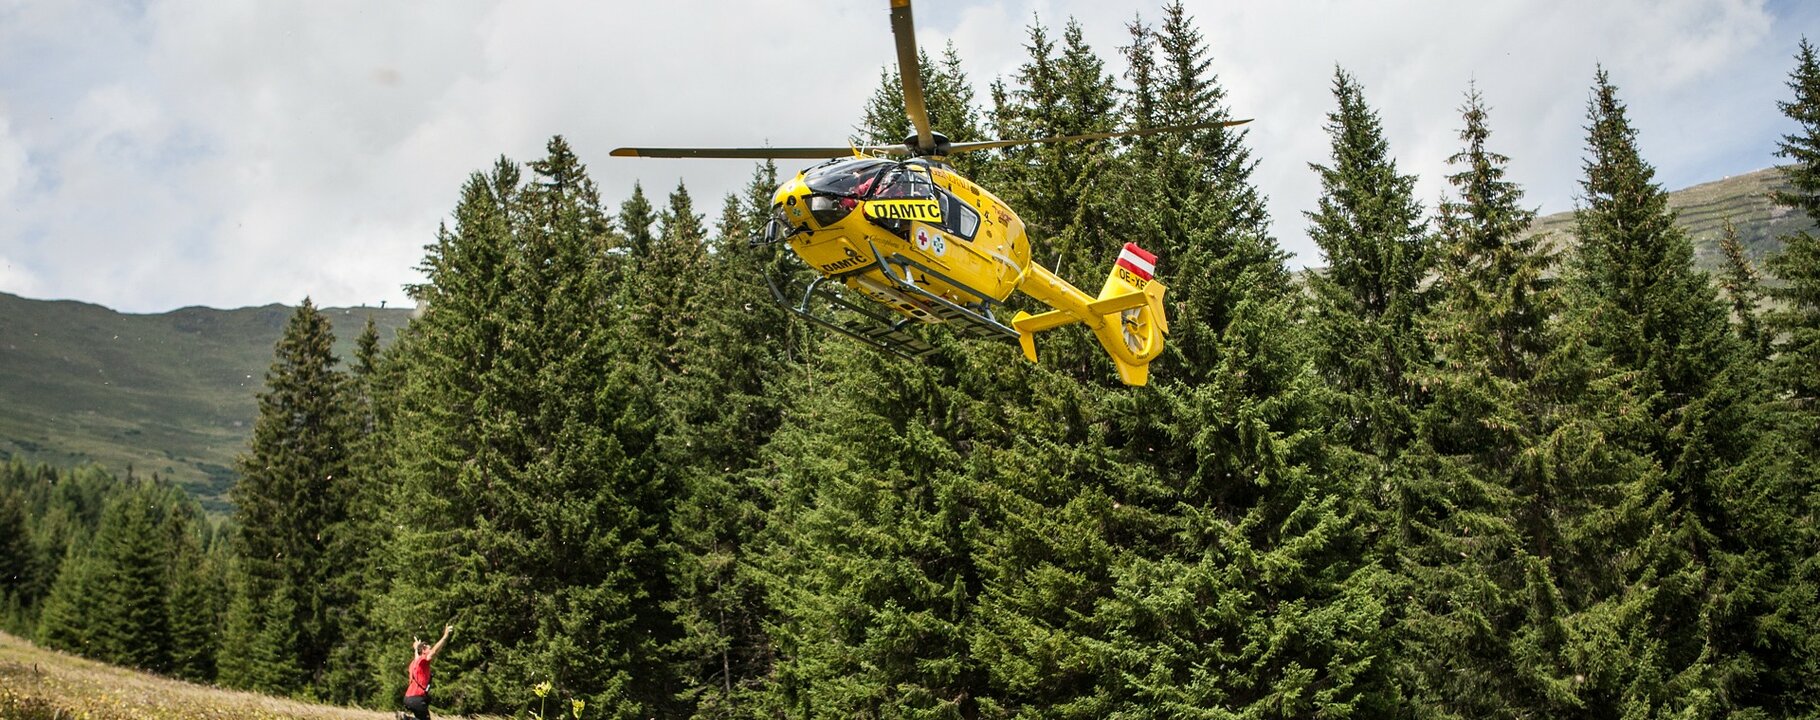 Rettungshubschrauber im Einsatz | © Serfaus-Fiss-Ladis/Tirol